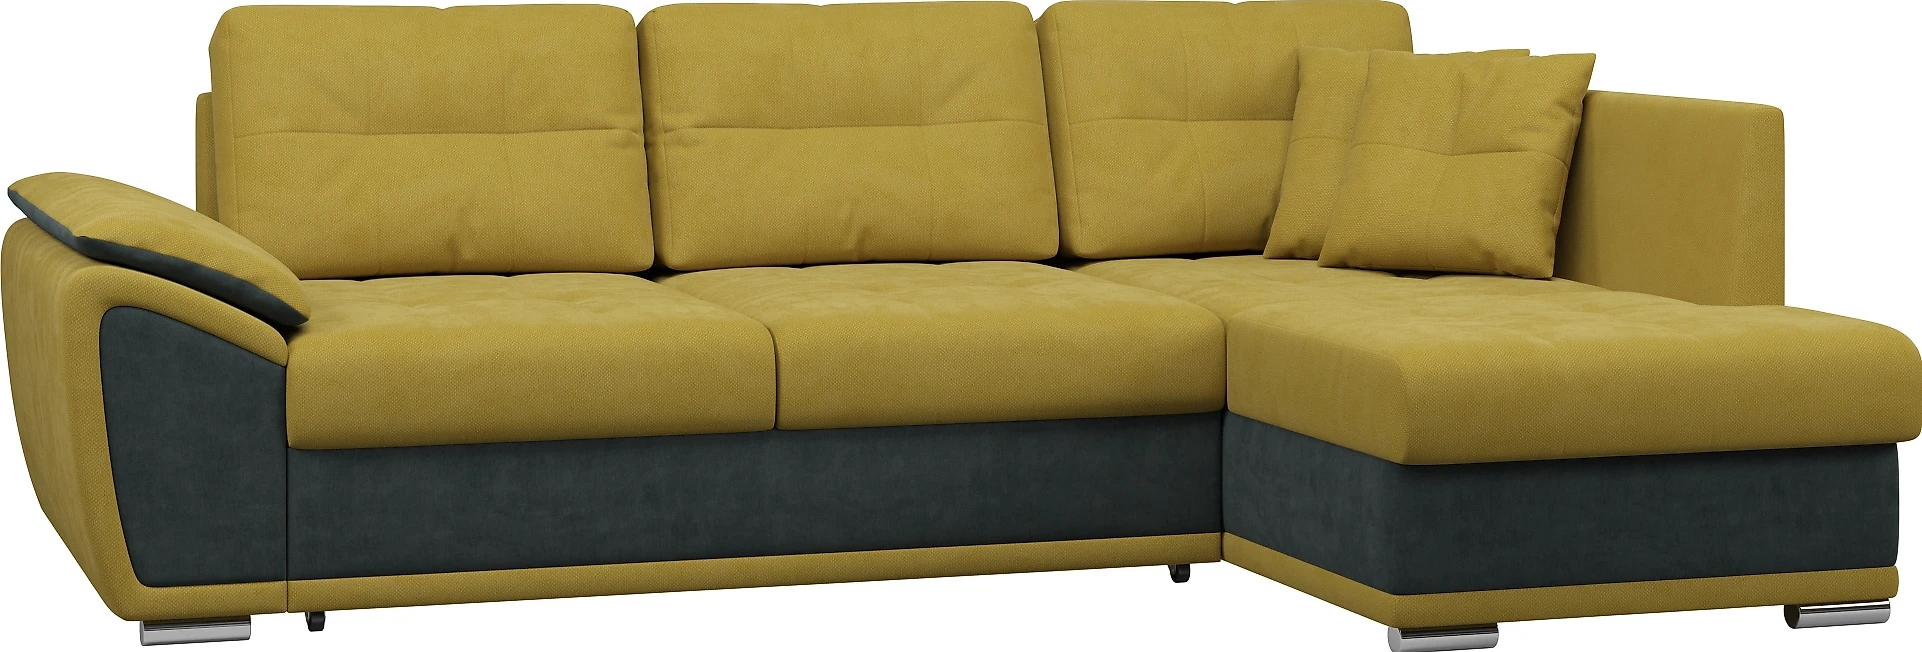 Угловой диван из ткани антикоготь Риттэр Плюш Мастард